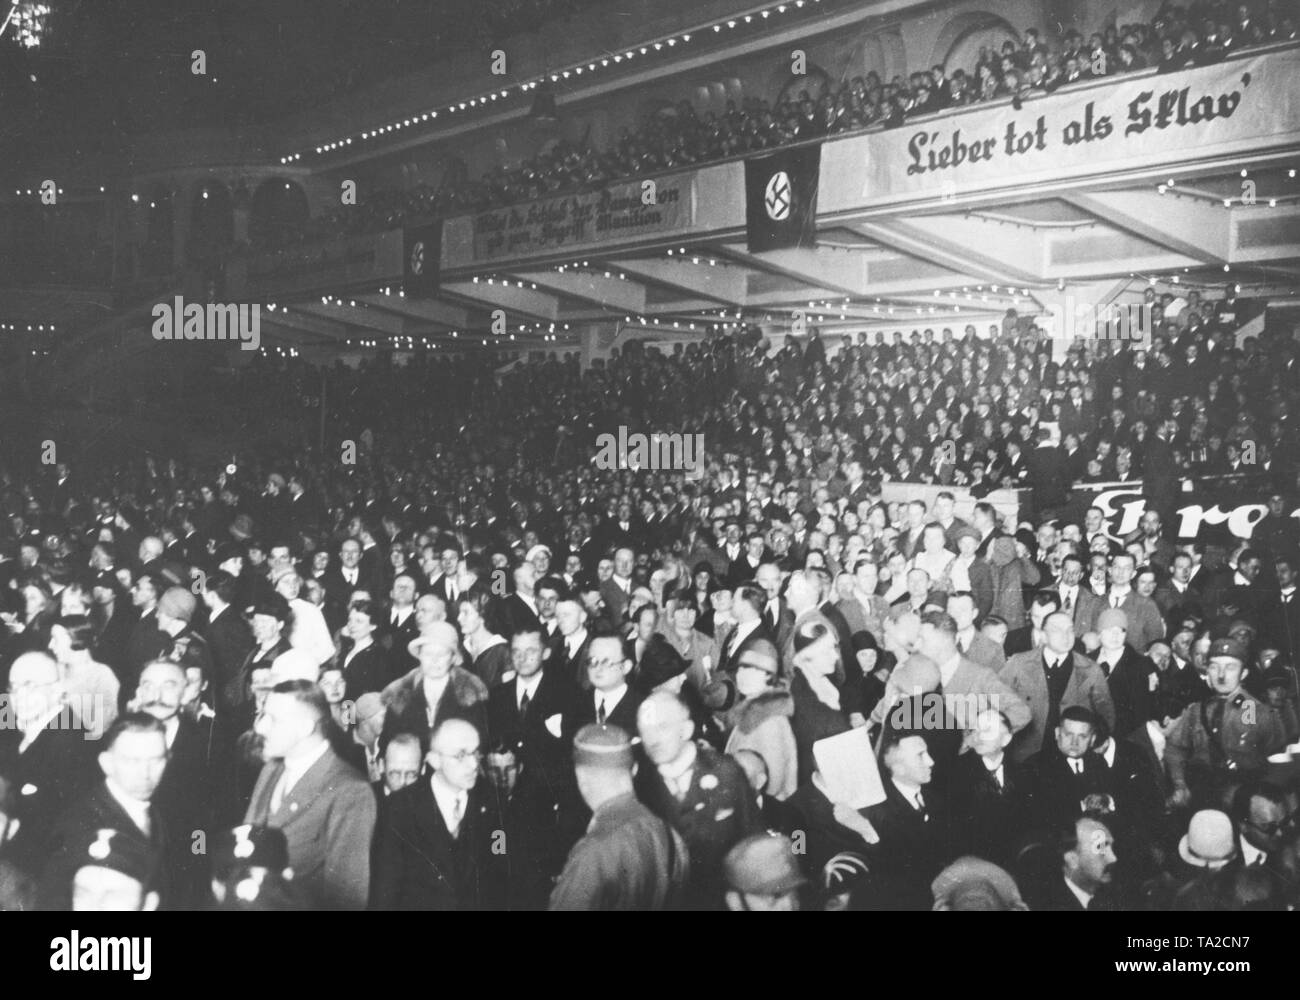 Blick auf eine Veranstaltung der NSDAP im Berliner Sportpalast, in dem Adolf Hitler zum ersten Mal als Sprecher wird, nach 3 Jahren Sprechen in der Öffentlichkeit verbieten. Die Tribünen sind mit Slogans wie "Hast du das Ende des Dawesfron geben Munition Angriff' eingerichtet und "Lieber tot als Sklave". Stockfoto